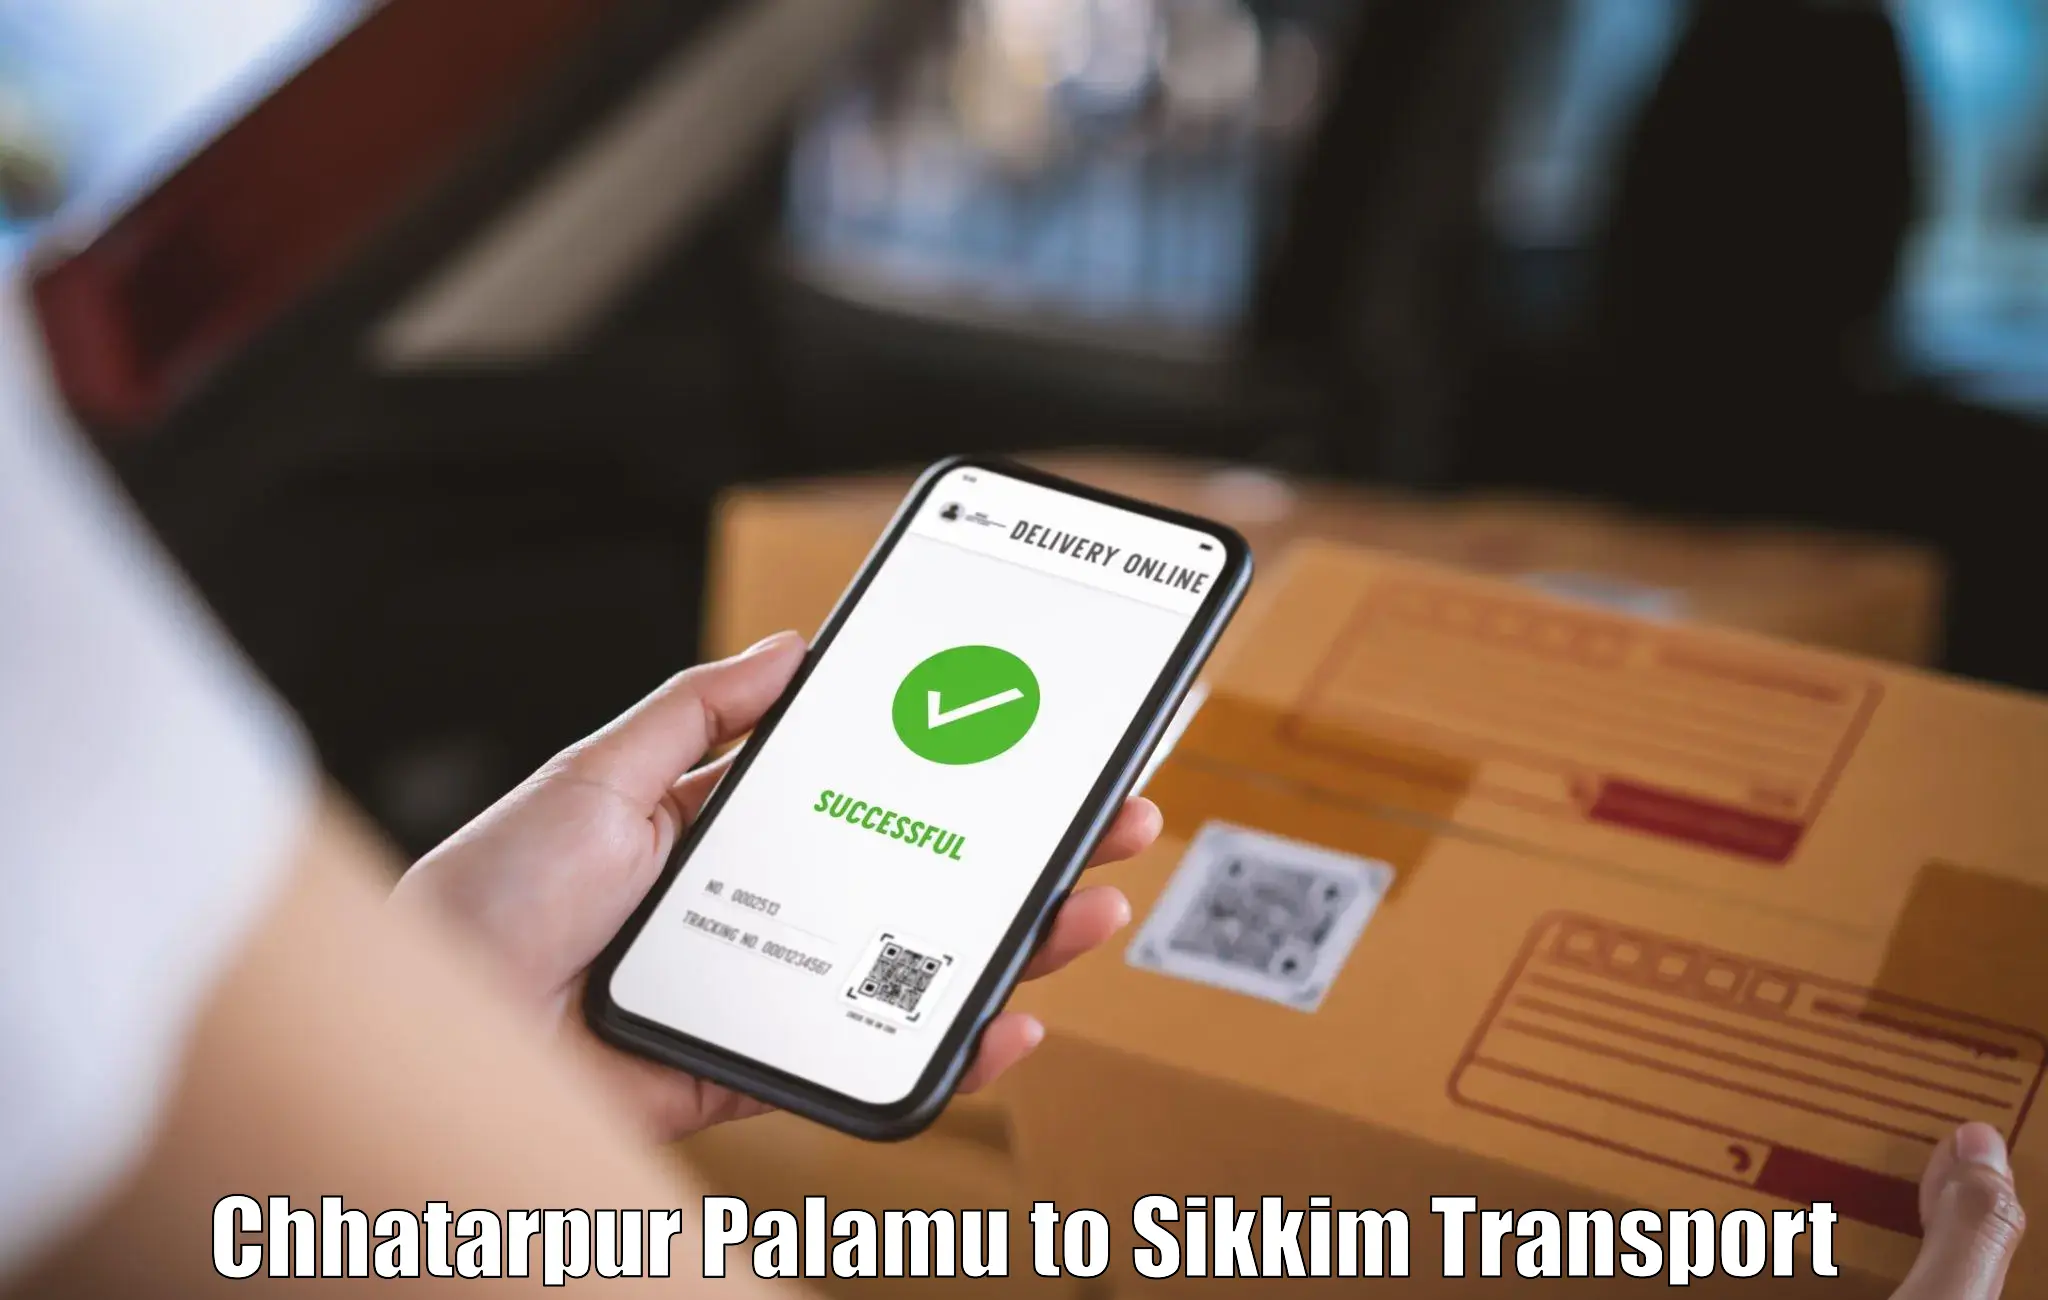 Online transport service Chhatarpur Palamu to Rongli